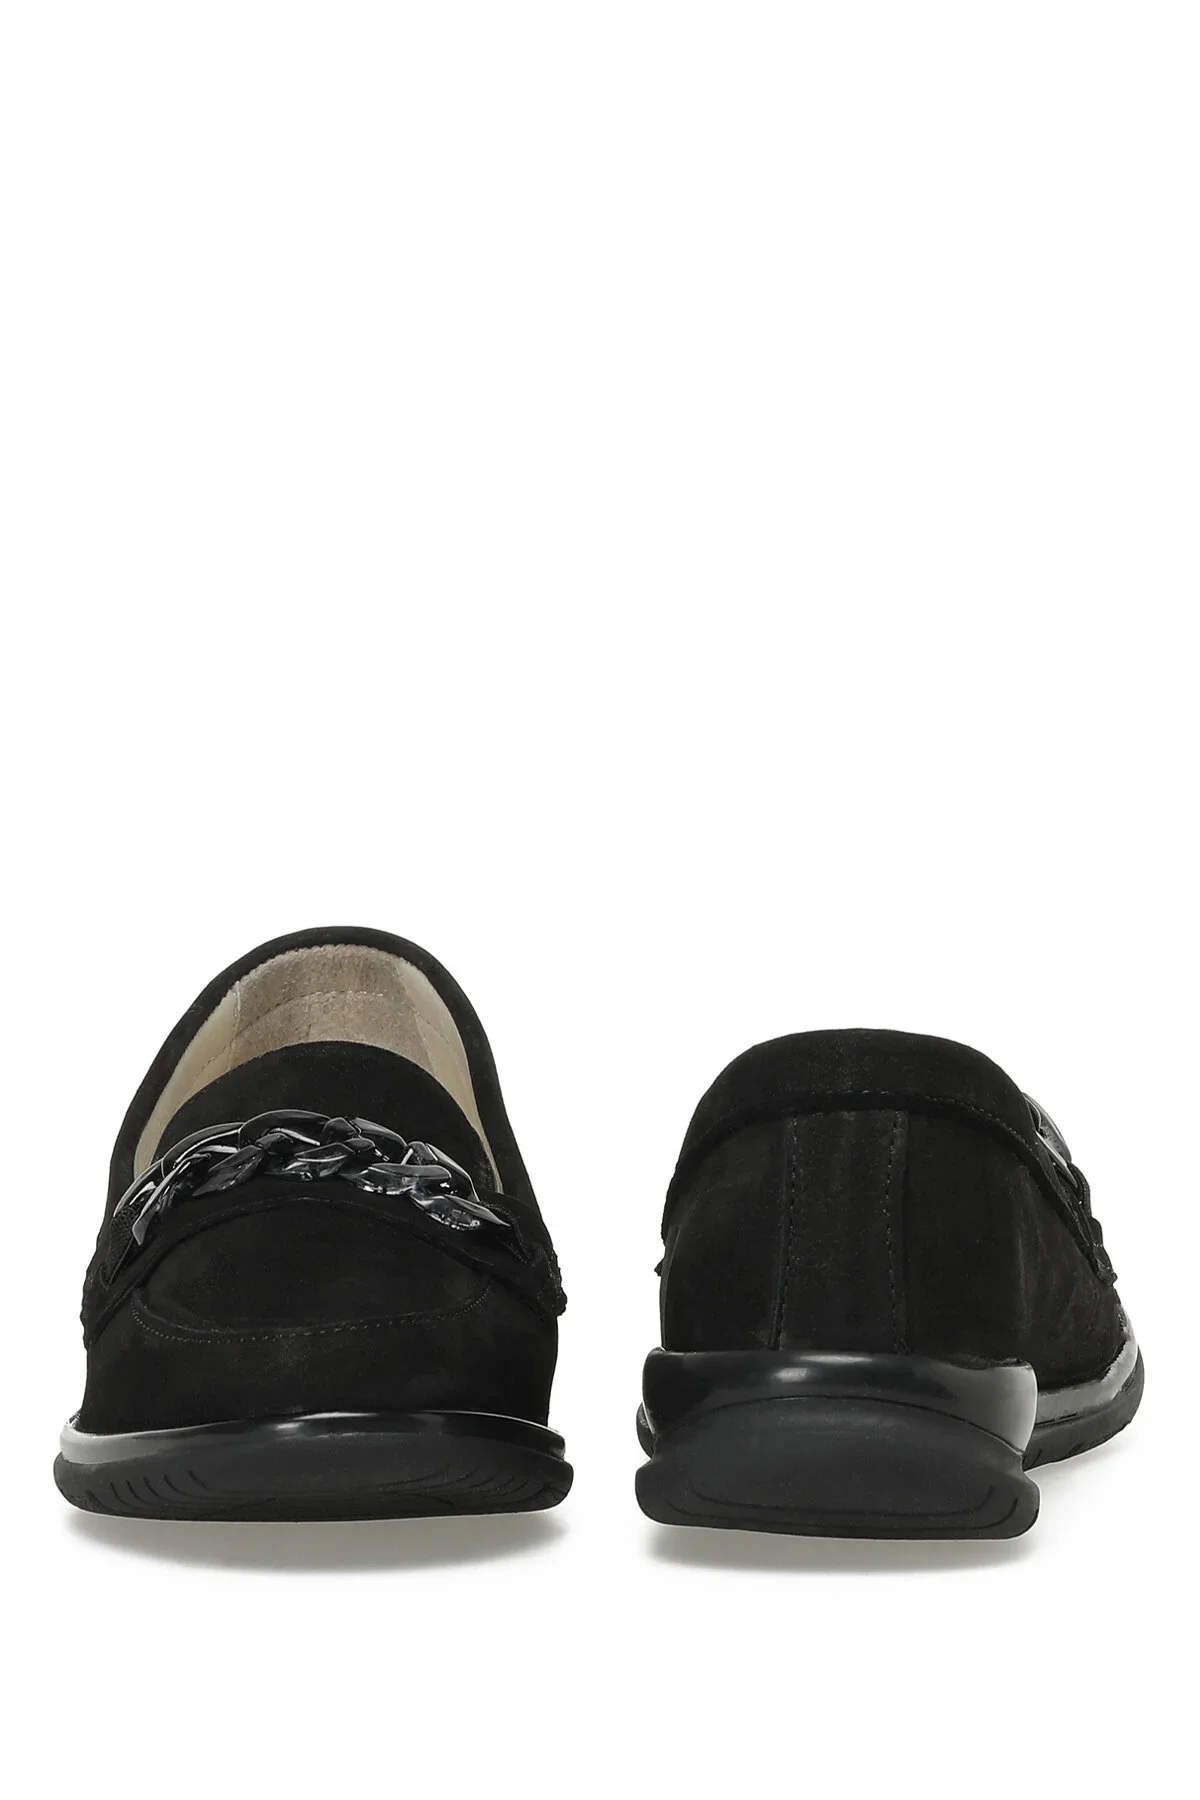 LIDO 3FX Kadın Loafer Düz Ayakkabı-Siyah - 5